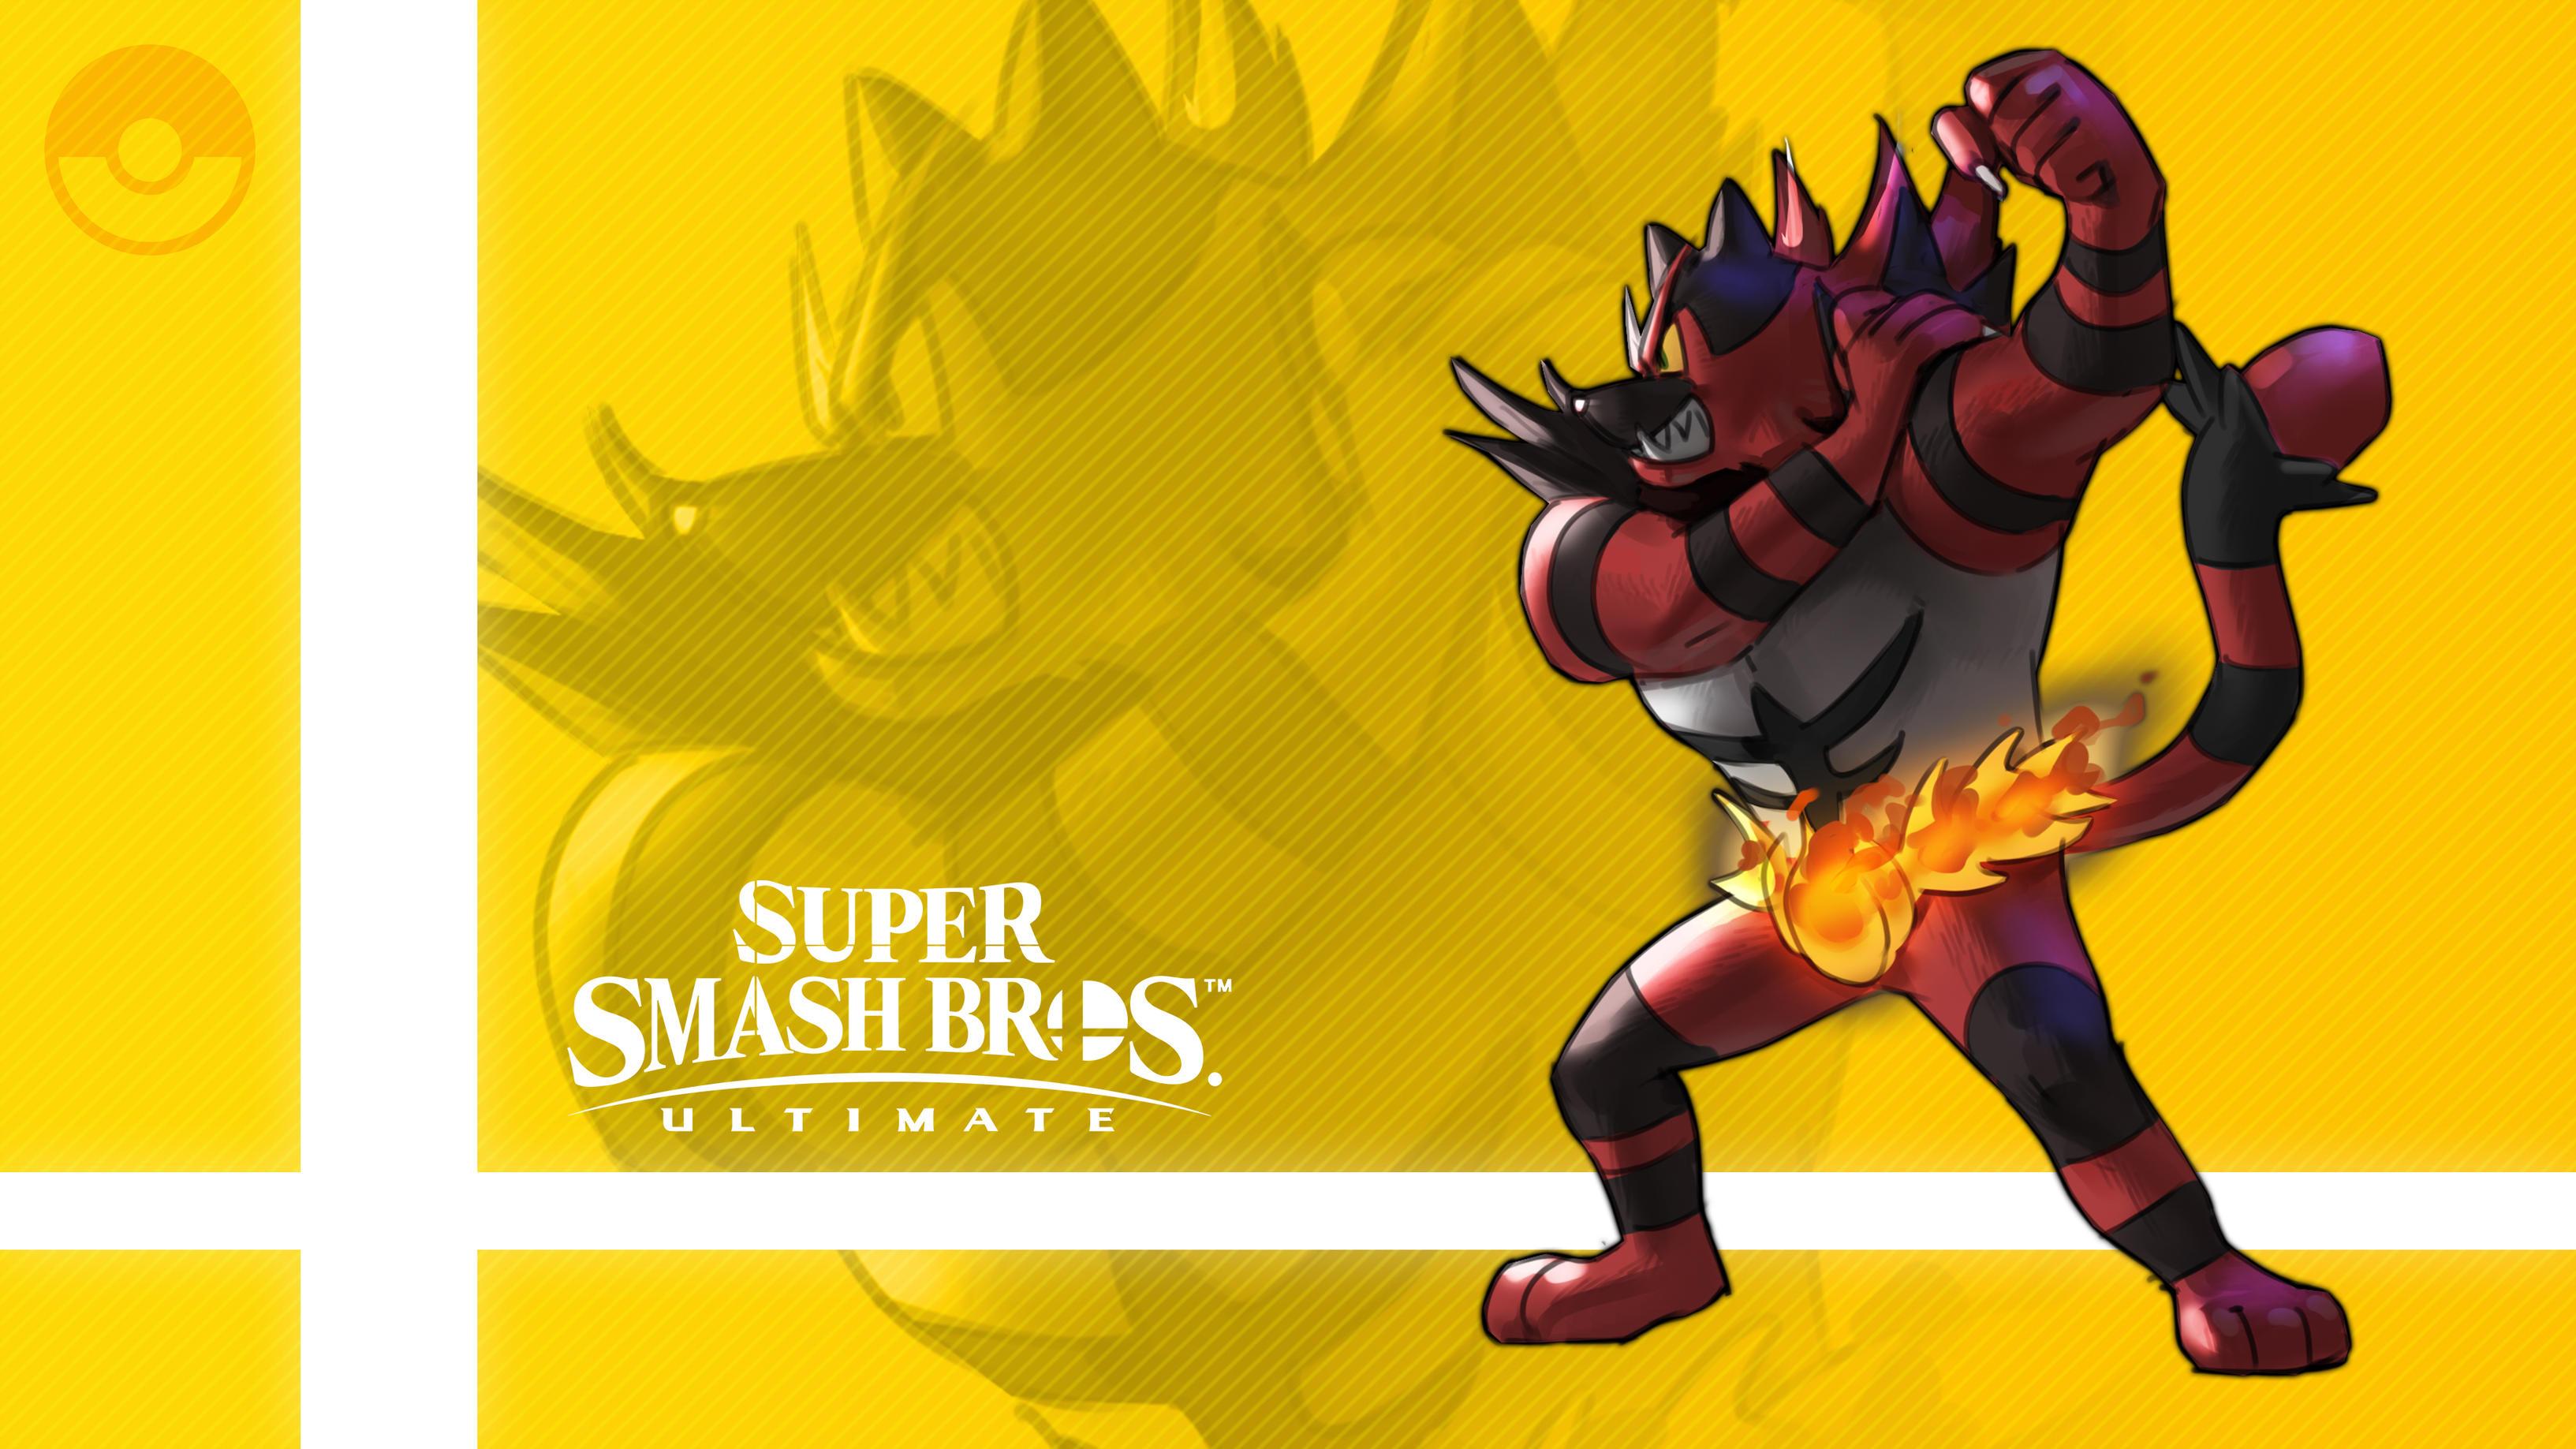 Incineroar (Pokémon), Super Smash Bros. Ultimate